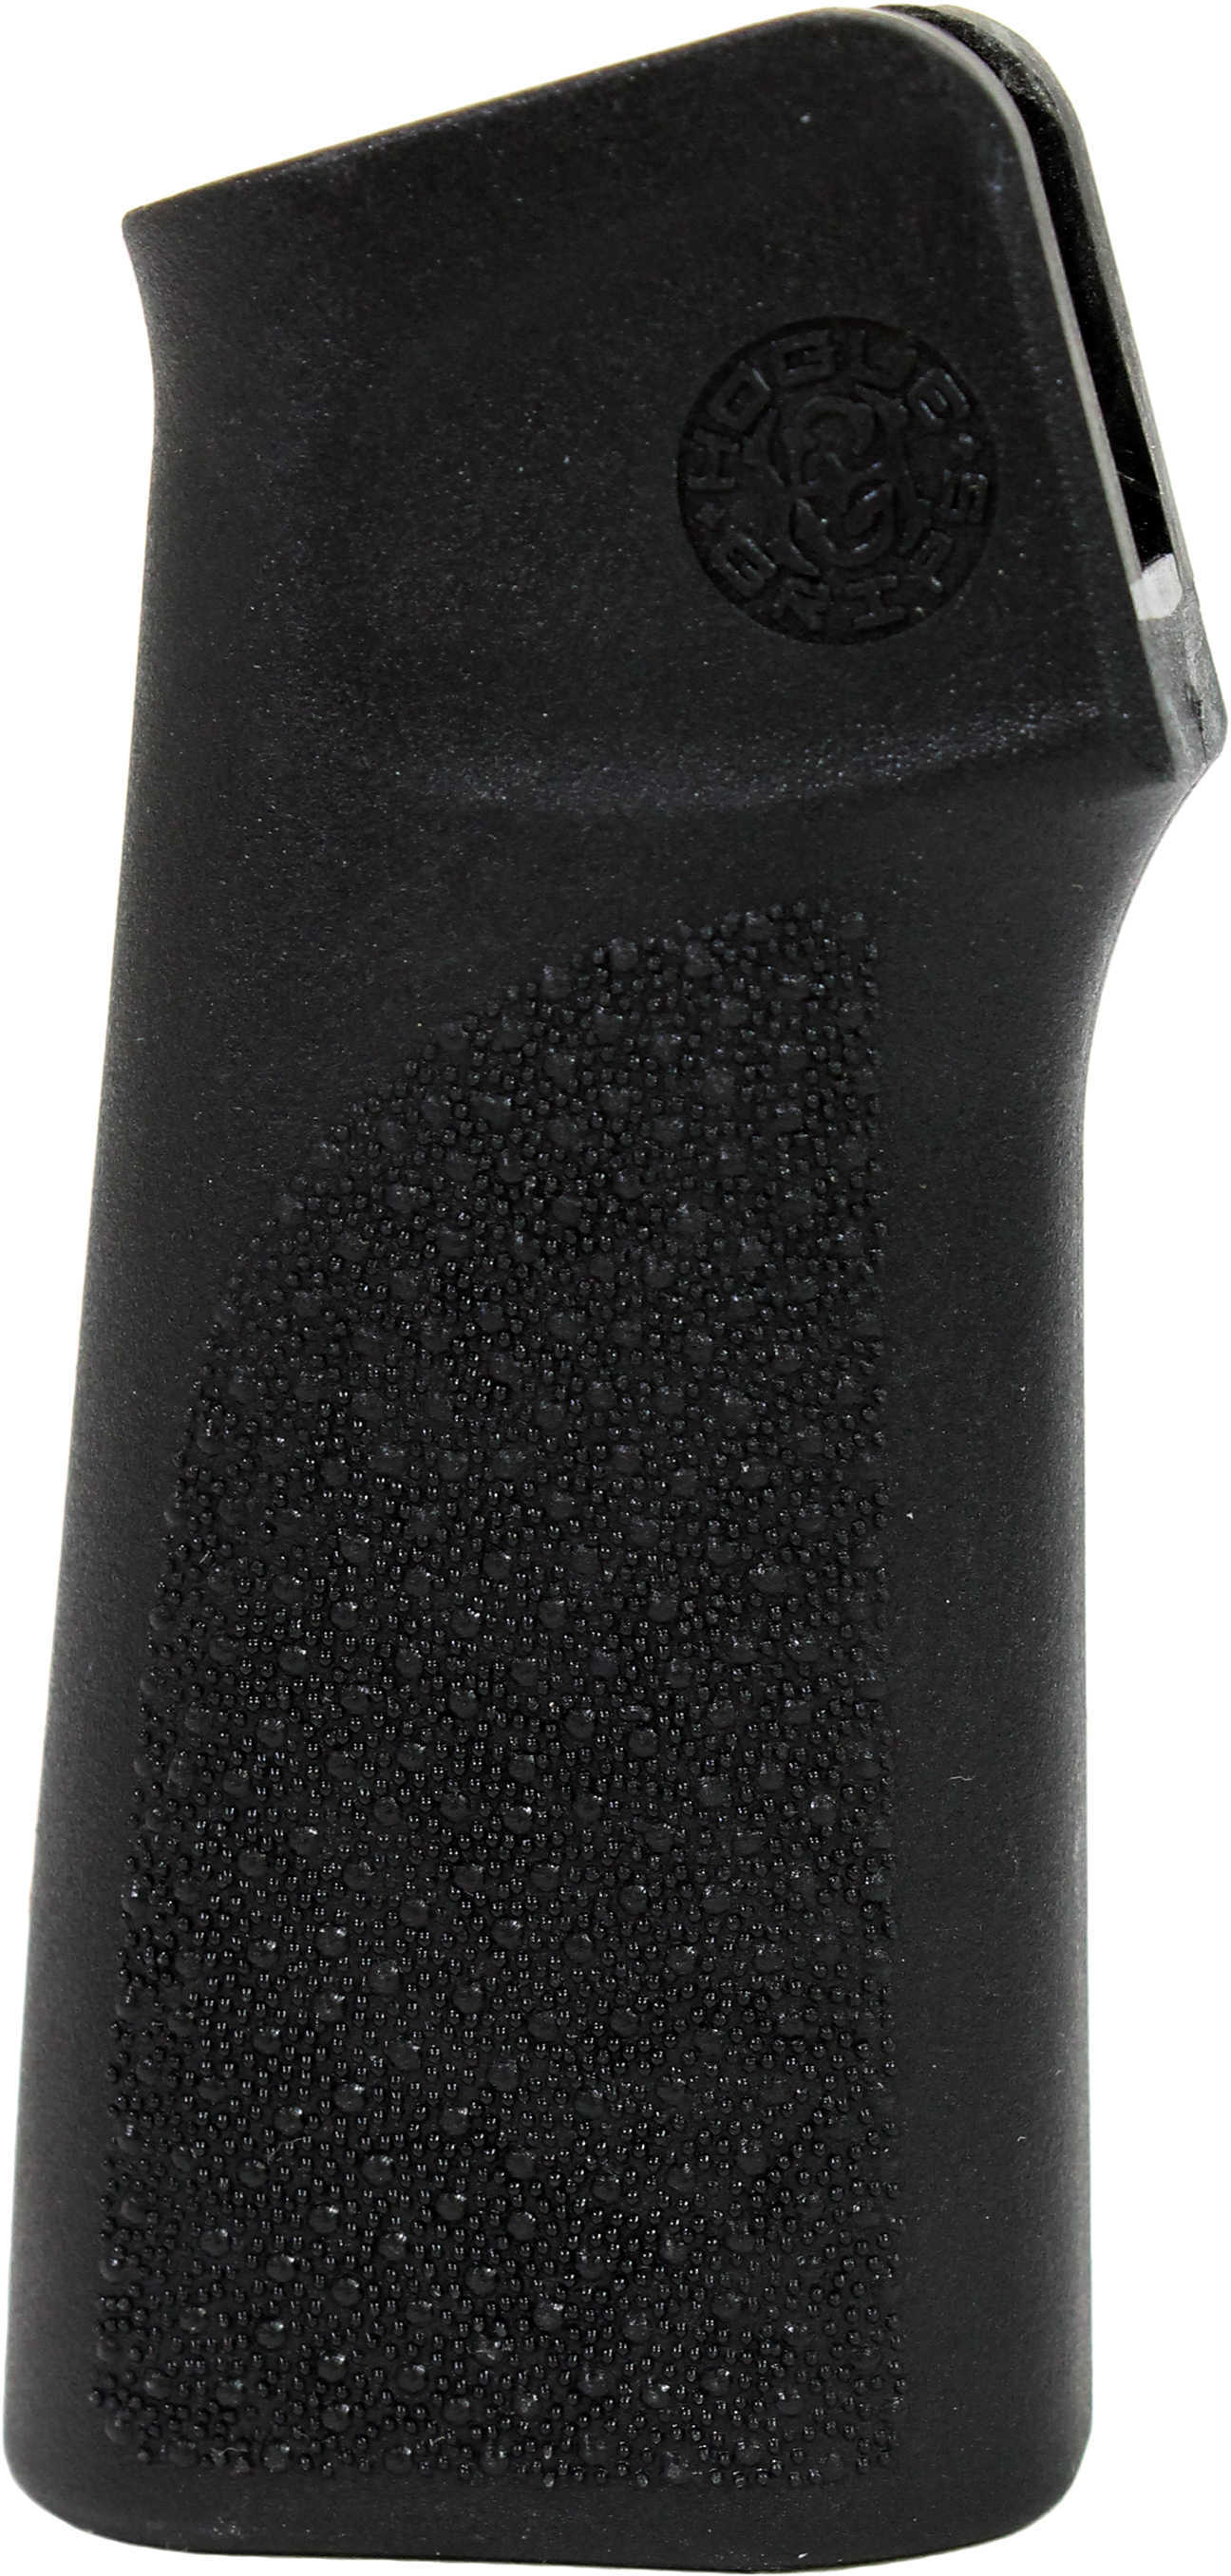 Hogue 13100 AR-15 Vertical Grip Textured Polymer Black